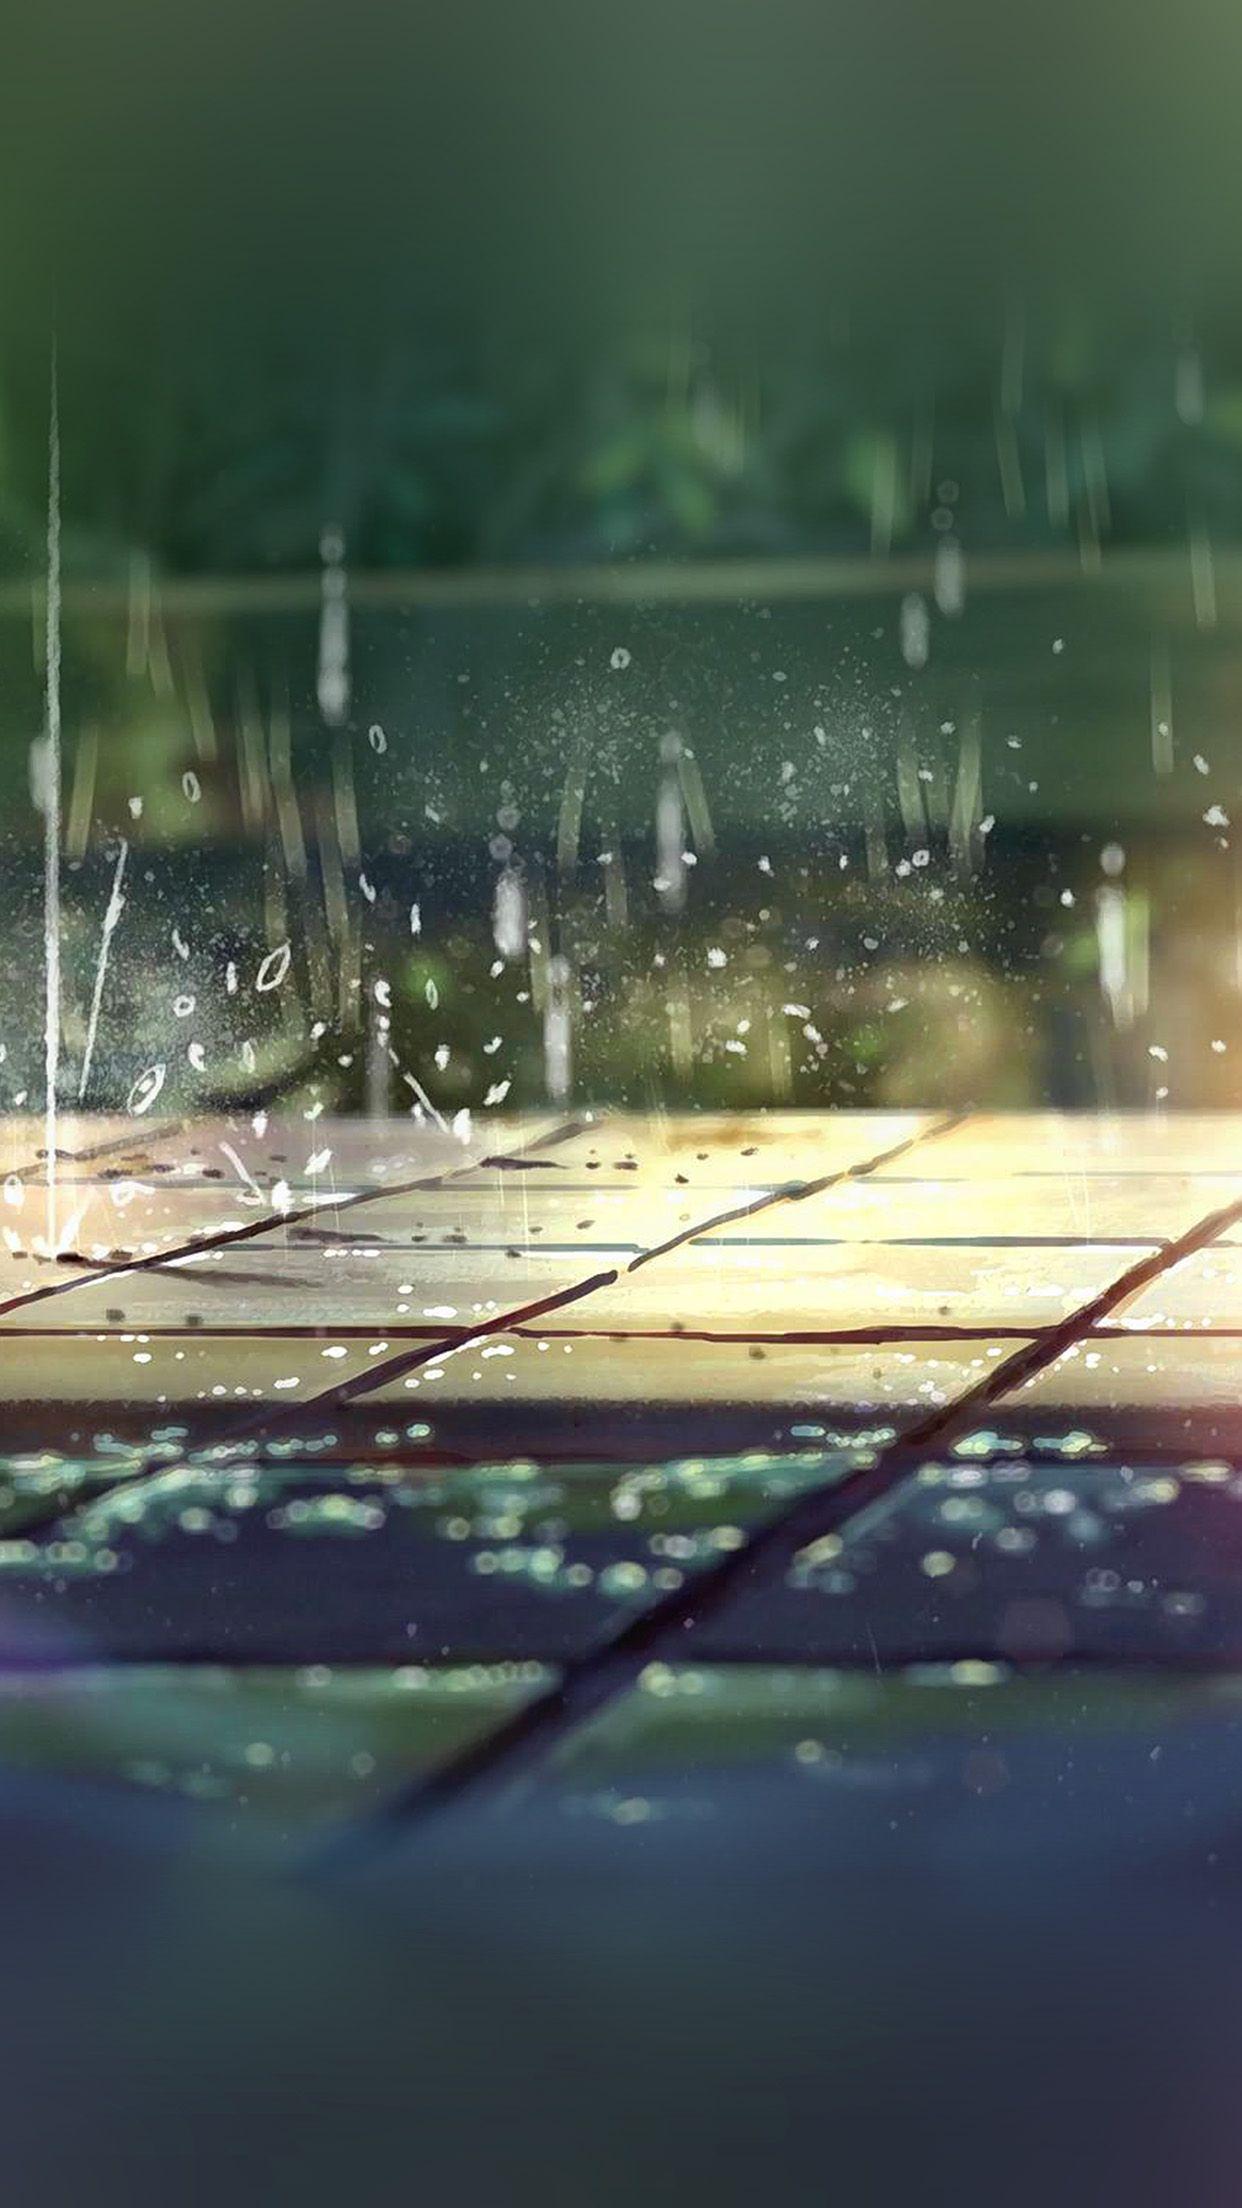 Mưa và Anime, một sự kết hợp hoàn hảo để tạo nên những hình ảnh đẹp mê hồn. Hình nền iPhone Rain Anime sẽ đưa bạn vào một không gian bình yên và lãng mạn giữa cơn mưa. Hãy tải ngay và thưởng thức hình ảnh tuyệt đẹp của Anime.